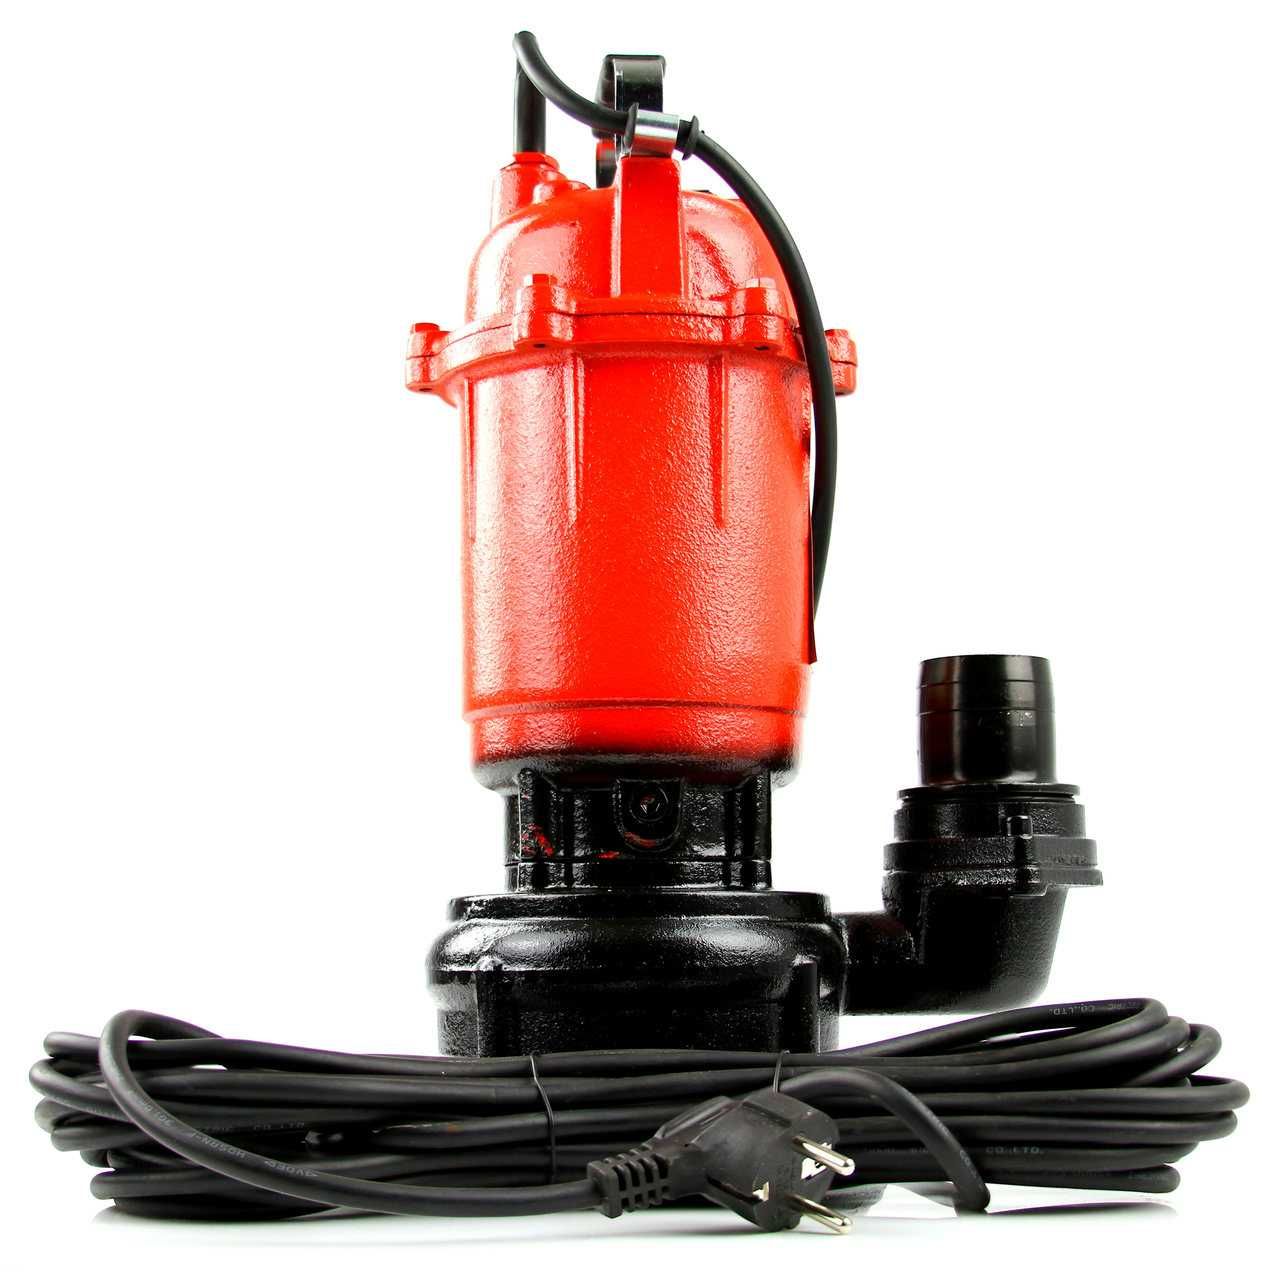 Pompa do brudnej wody szamba z rozdrabniaczem 2 cale Mar-Pol M279900